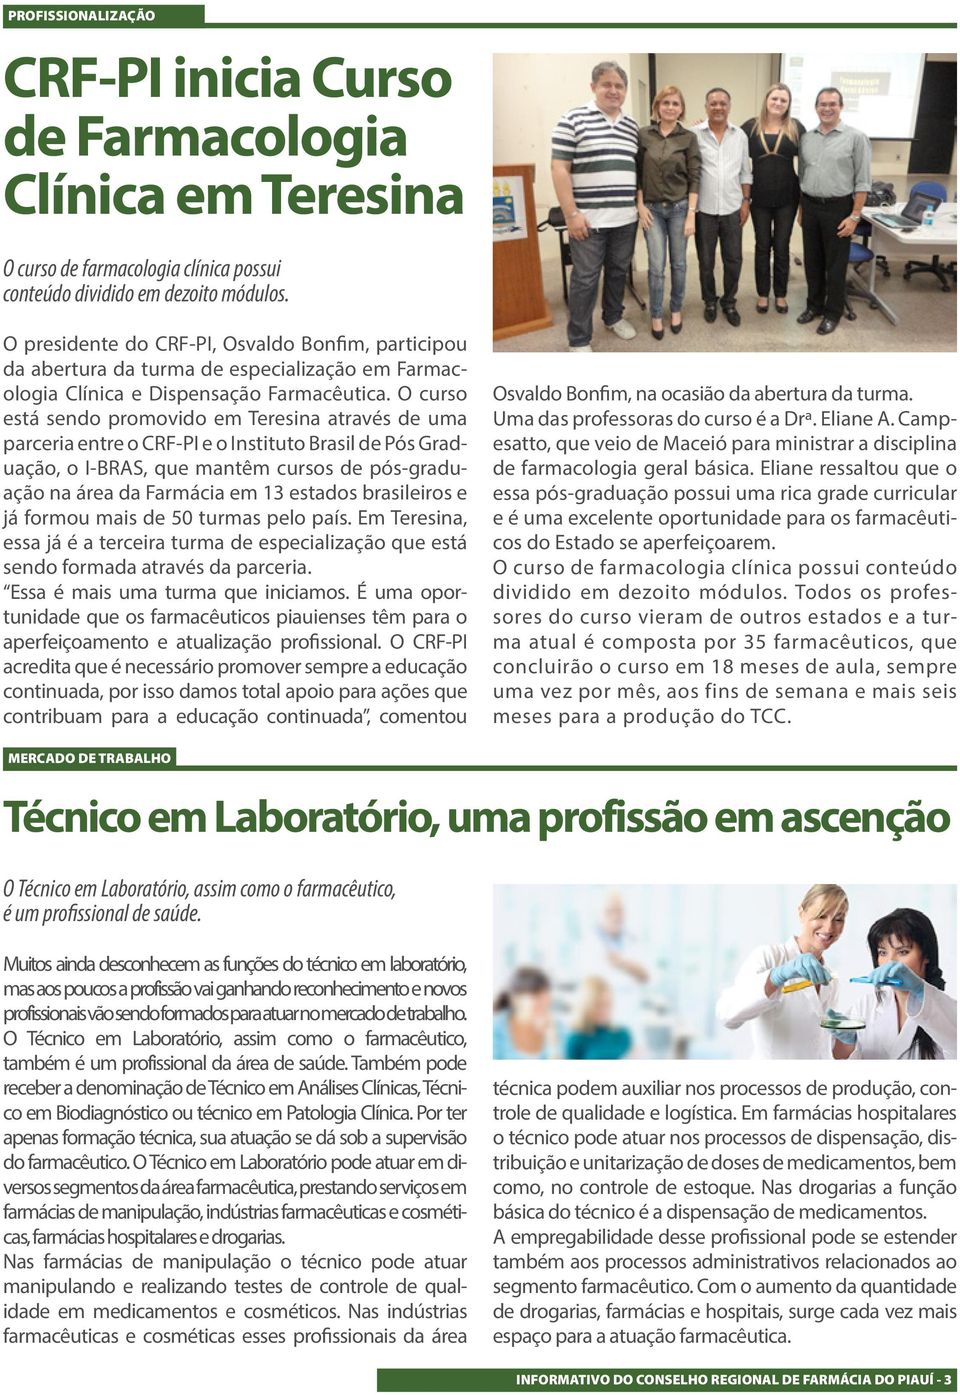 O curso está sendo promovido em Teresina através de uma parceria entre o CRF-PI e o Instituto Brasil de Pós Graduação, o I-BRAS, que mantêm cursos de pós-graduação na área da Farmácia em 13 estados